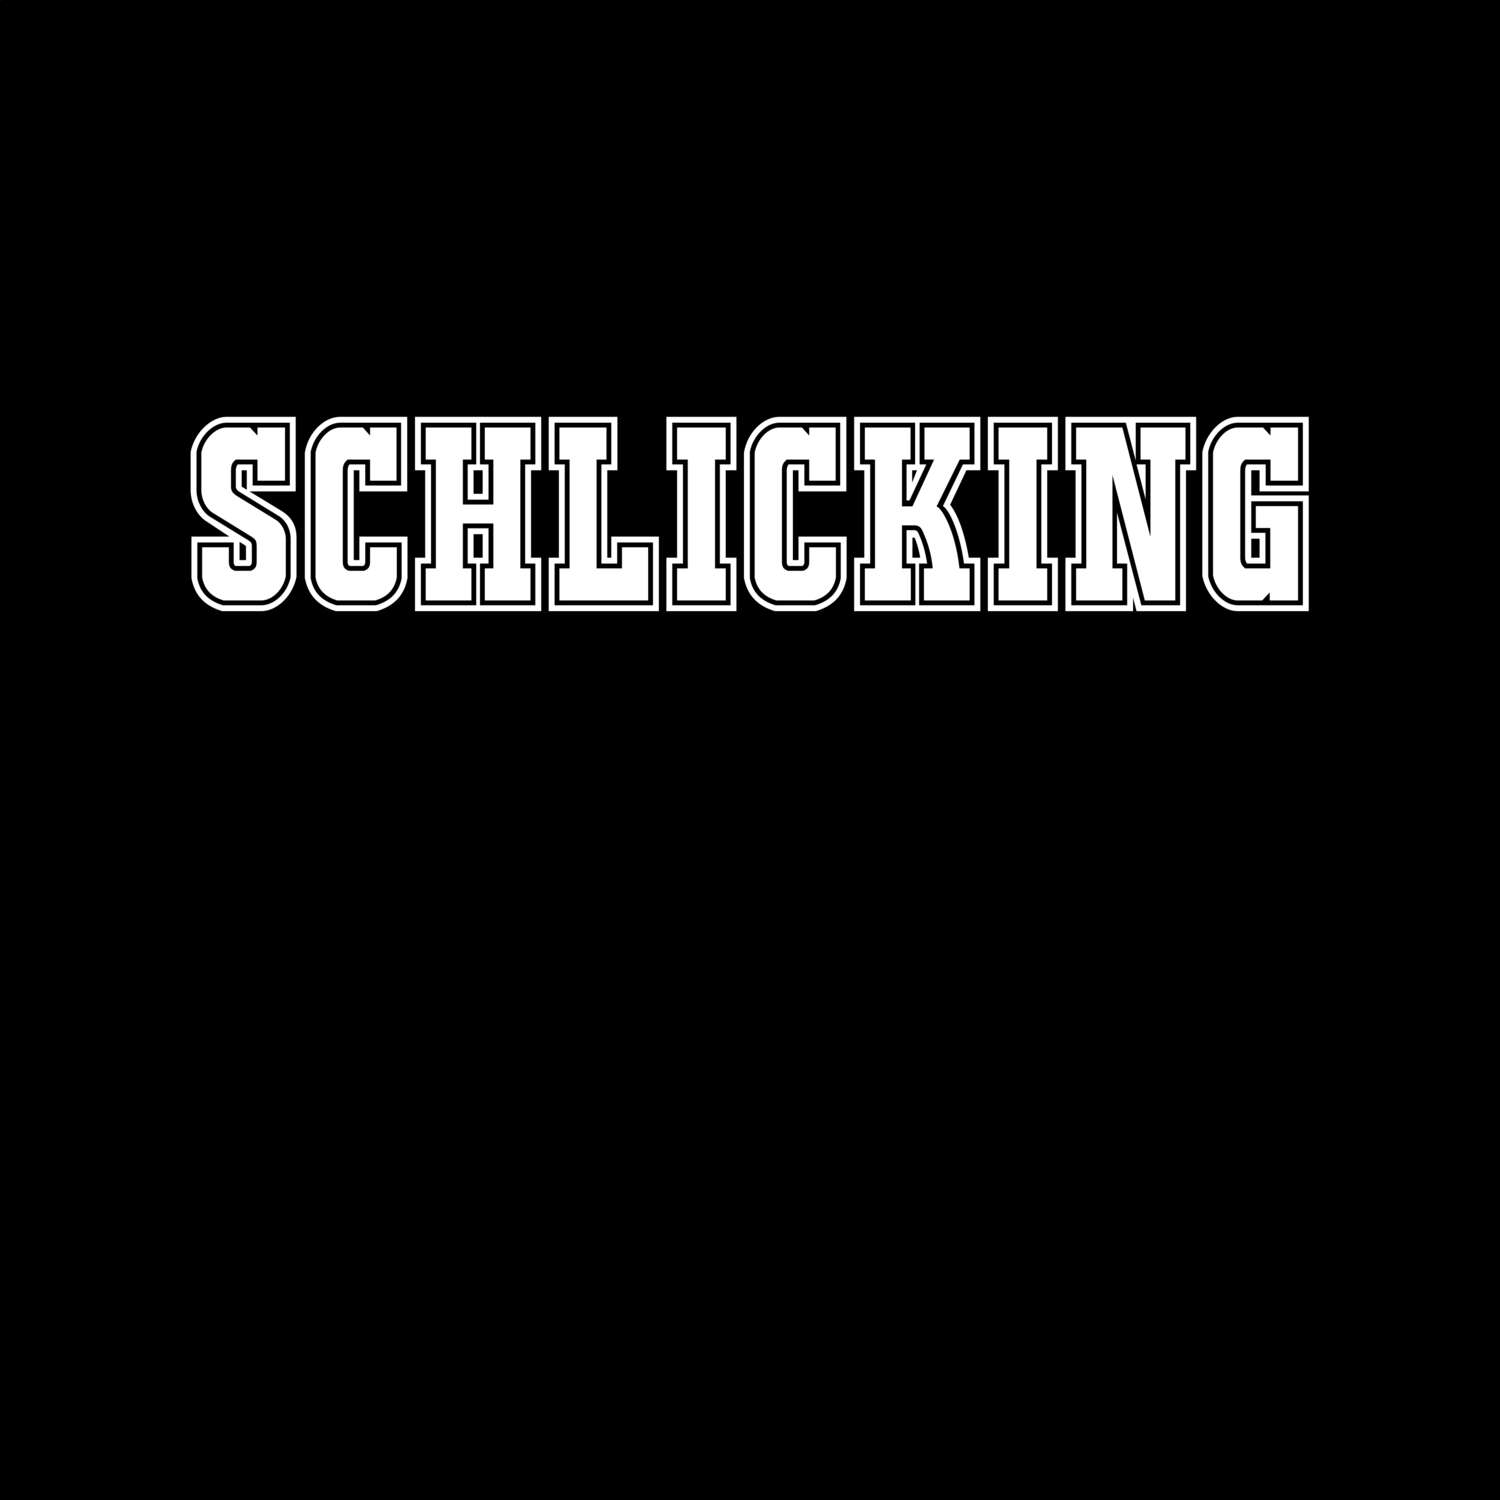 Schlicking T-Shirt »Classic«